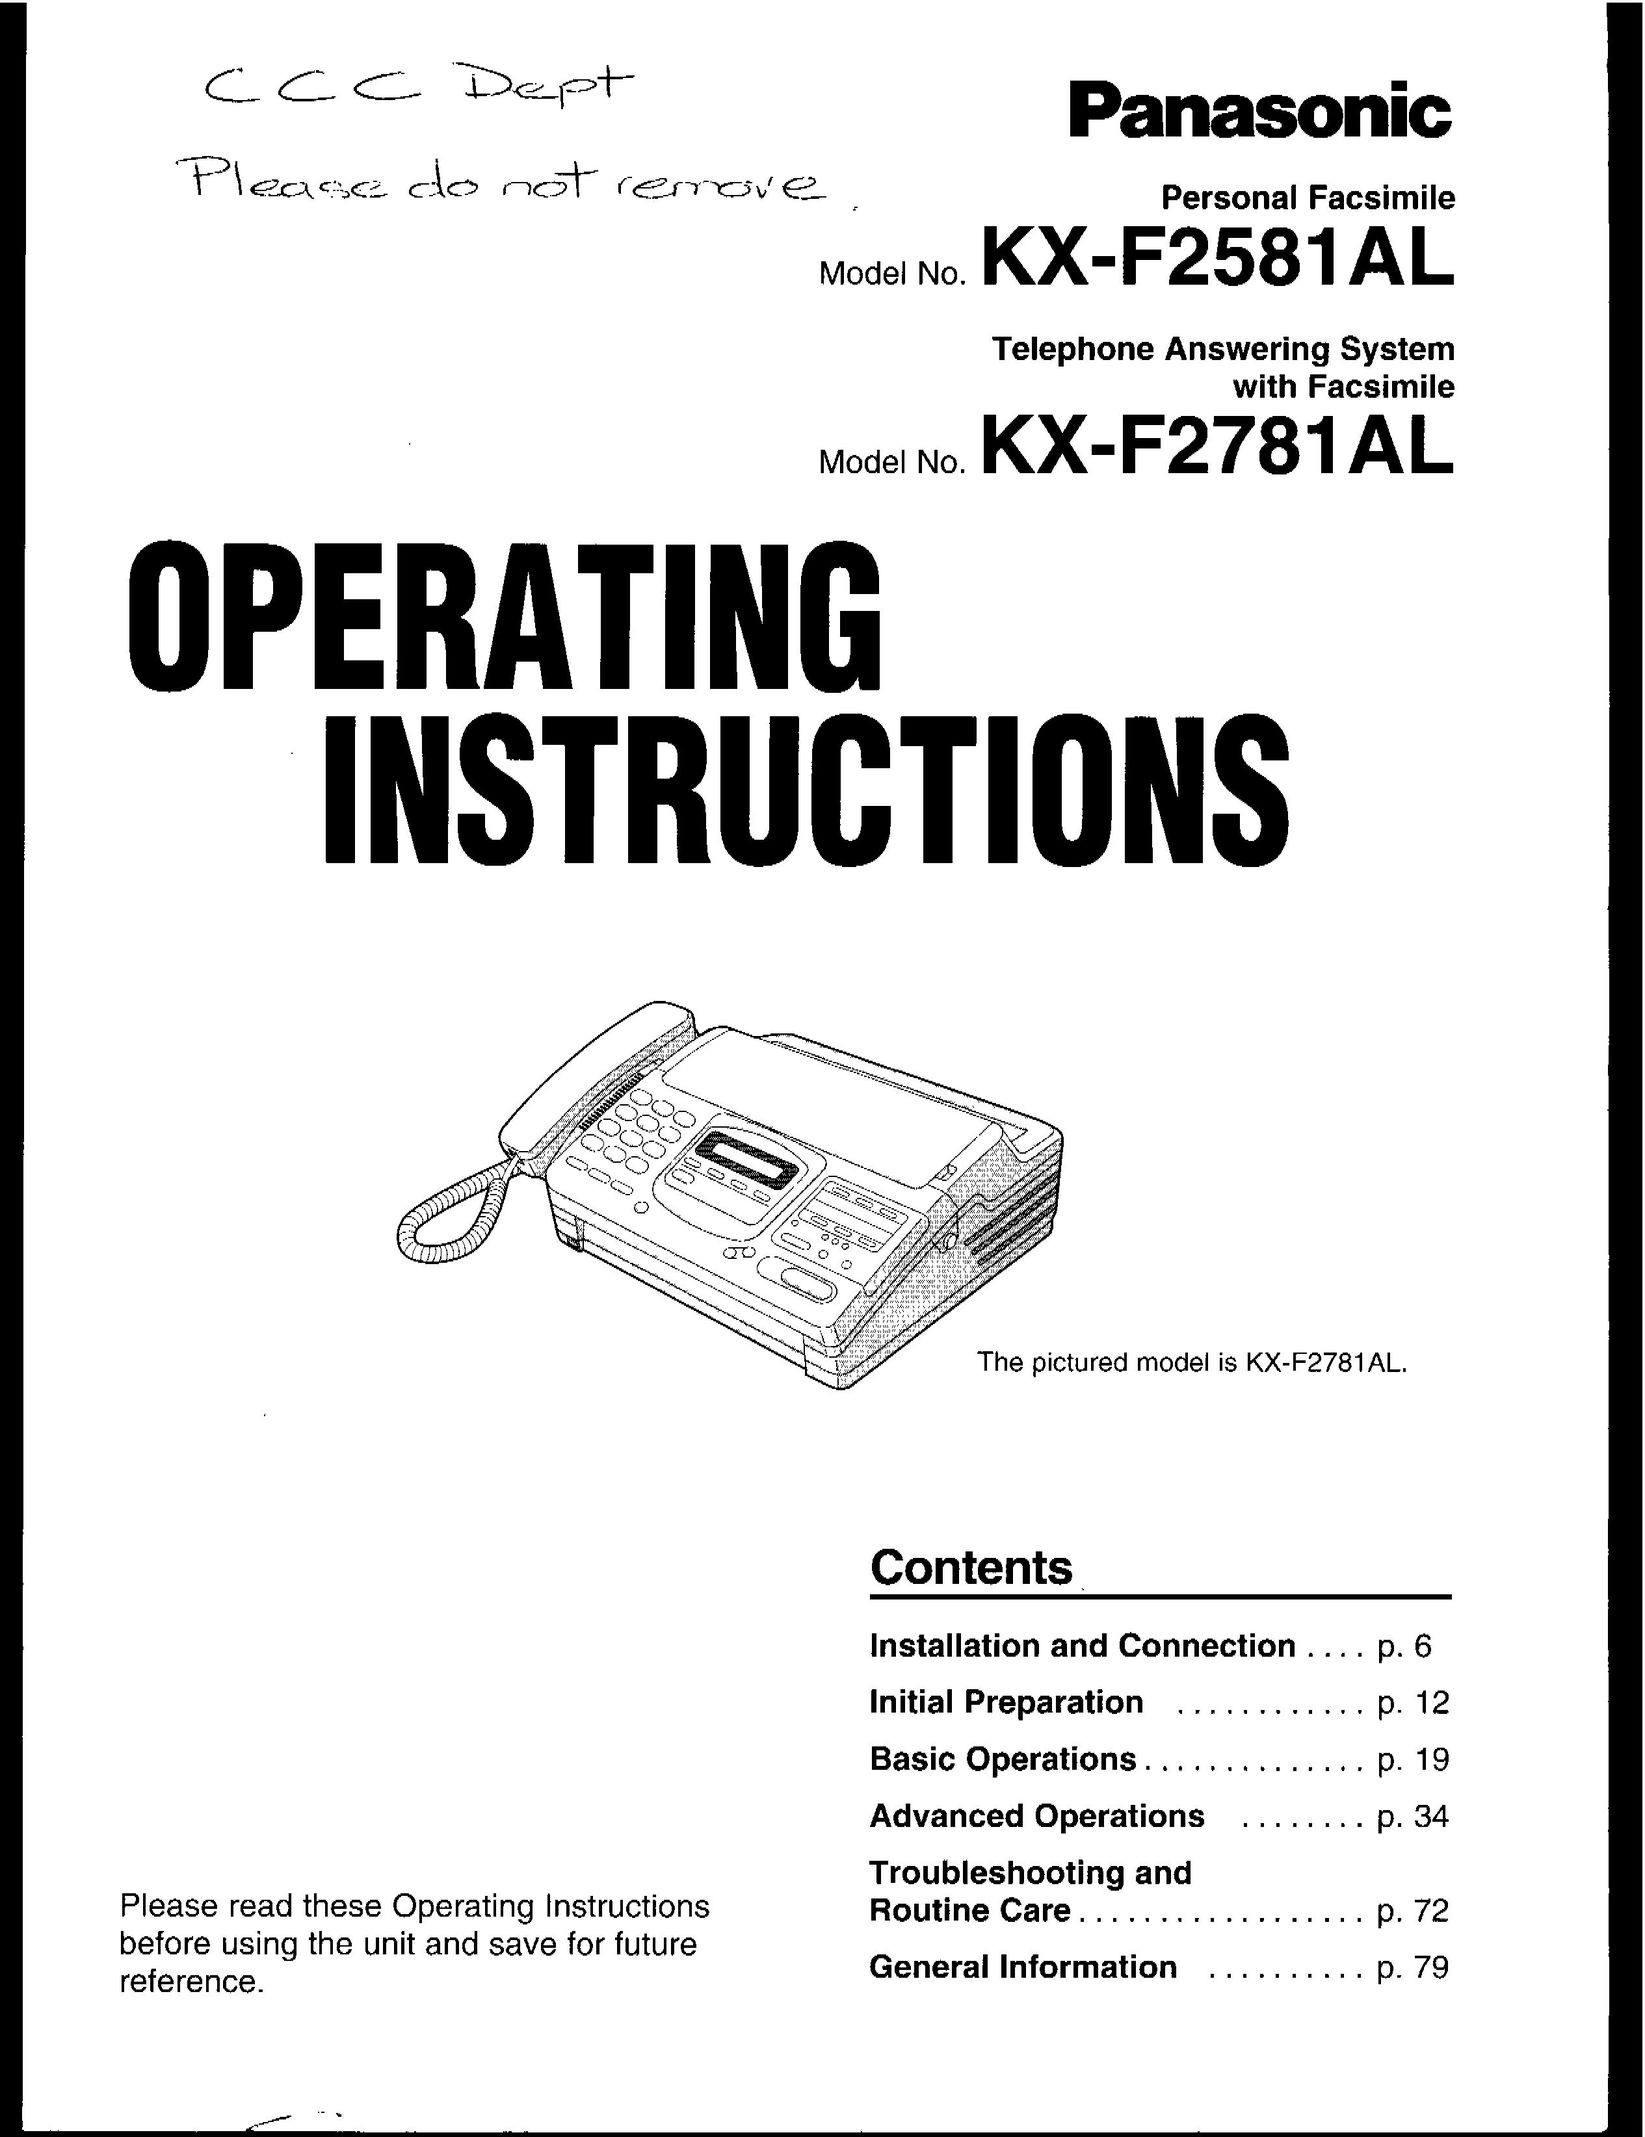 Panasonic KX-F2581AL Fax Machine User Manual